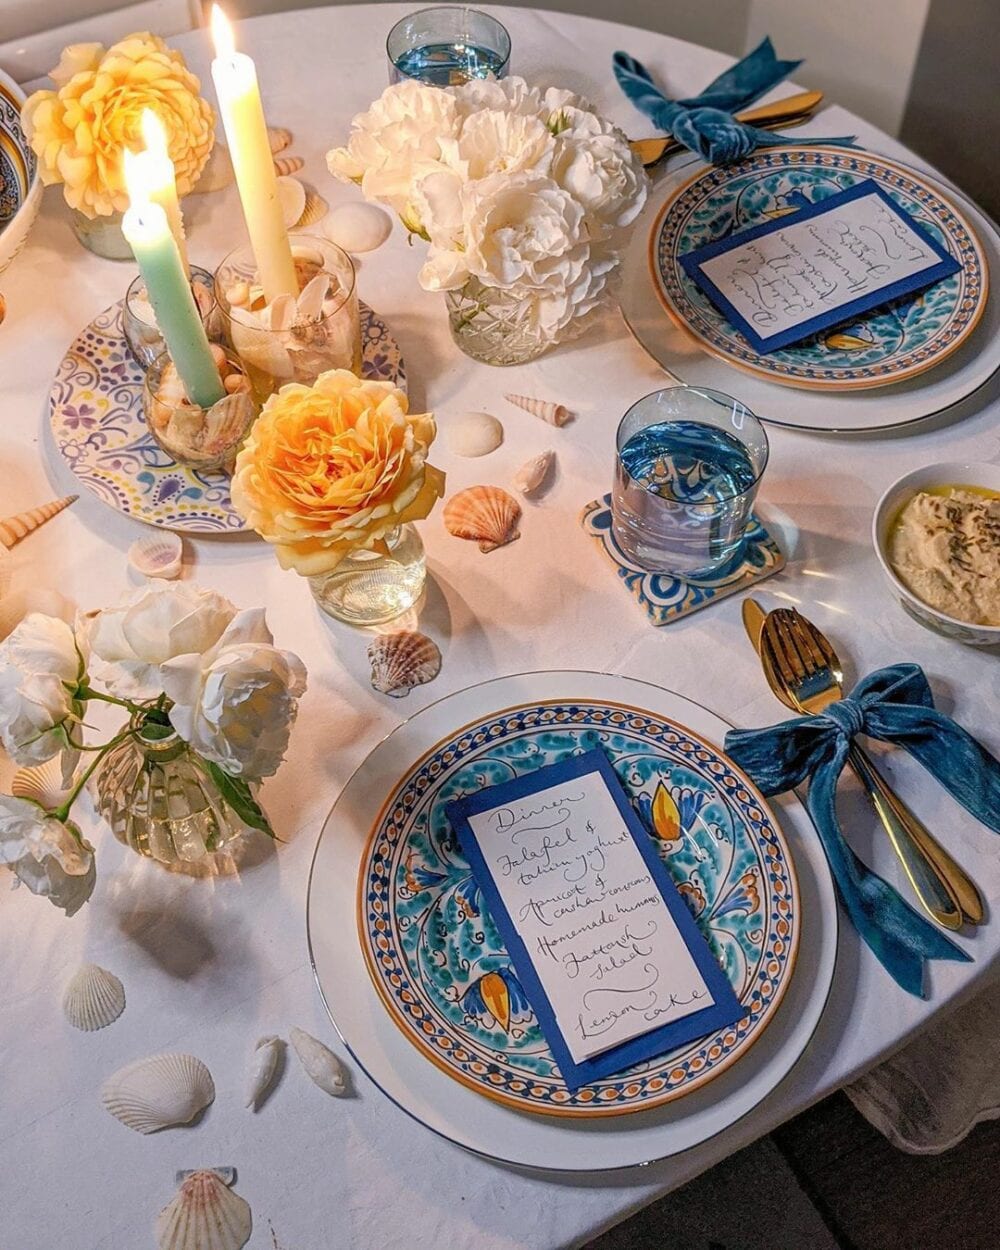 Mesa posta para jantar romântico com decoração em azul e amarelo